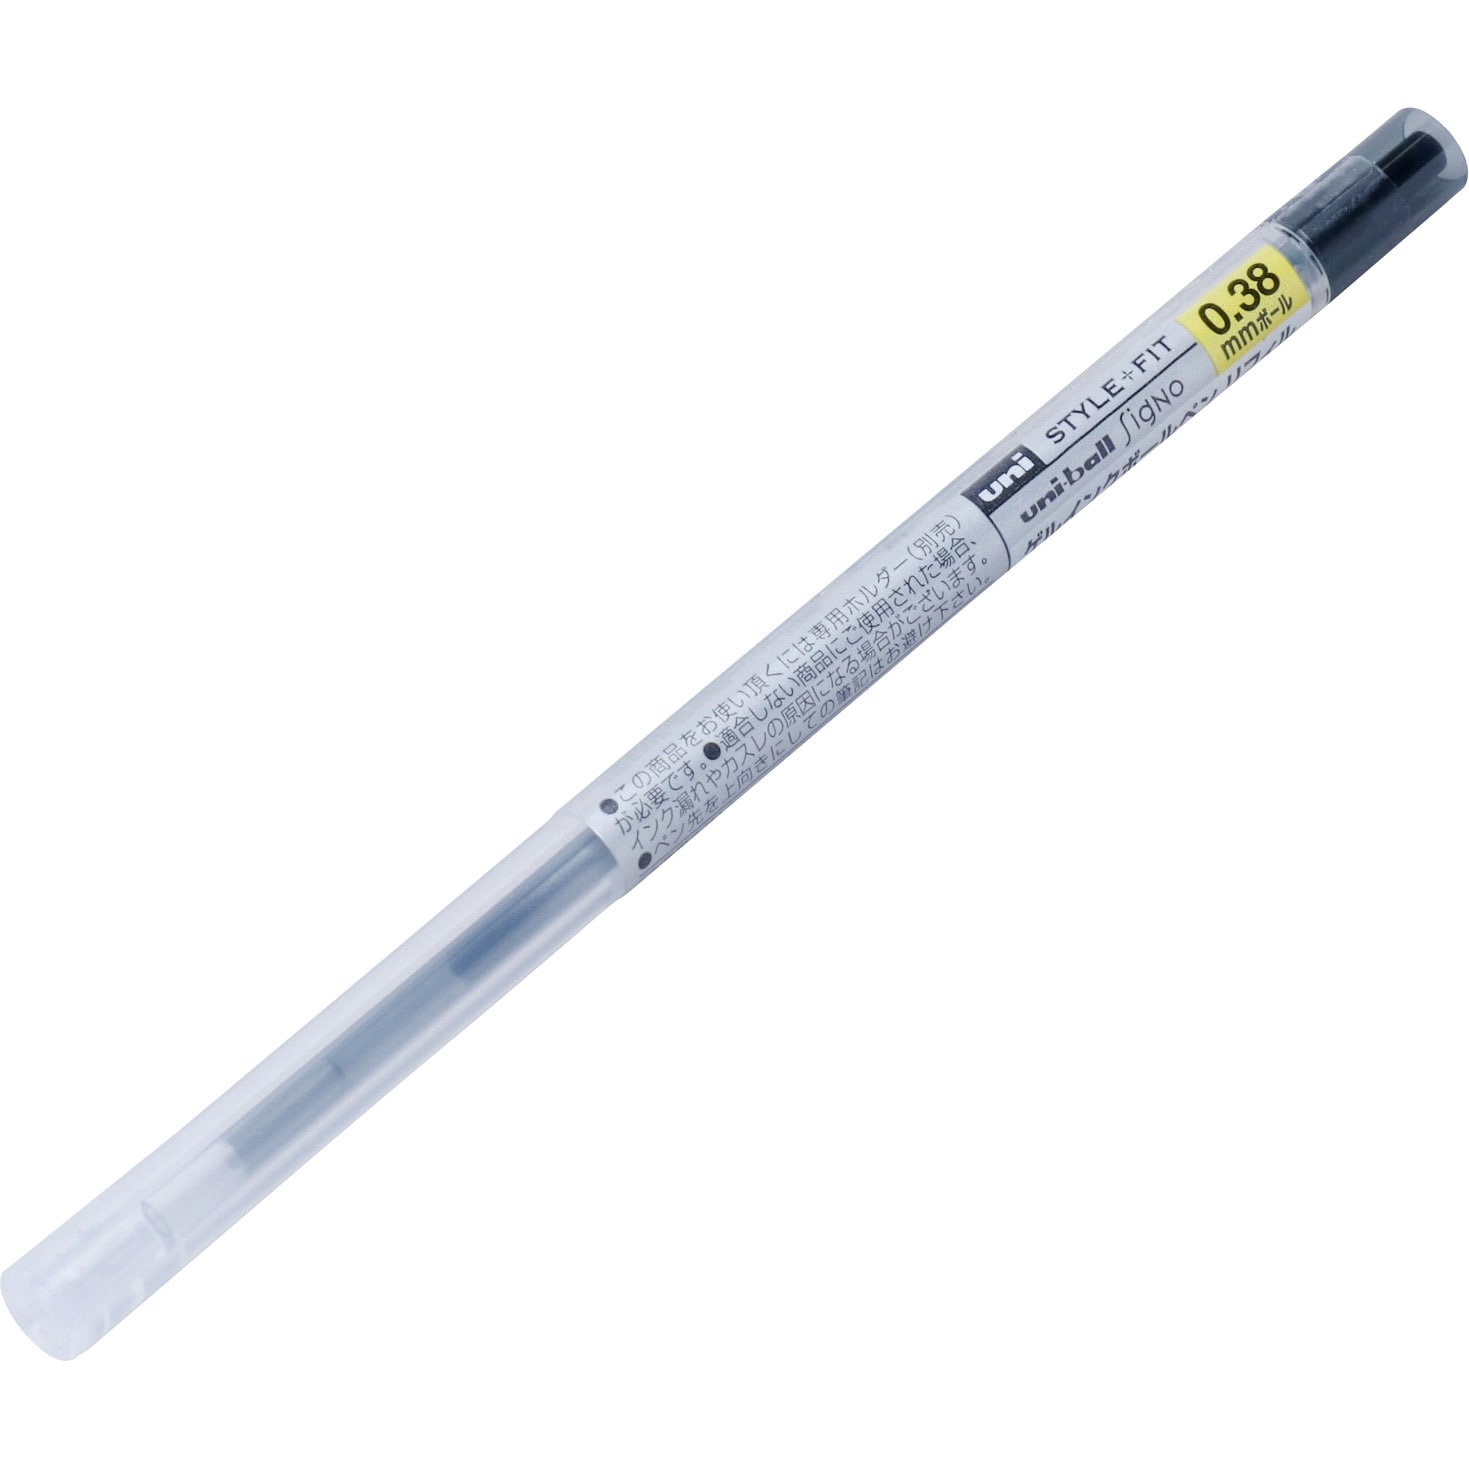 業務用300セット) 三菱鉛筆 ボールペン替え芯/リフィル 〔0.55mm